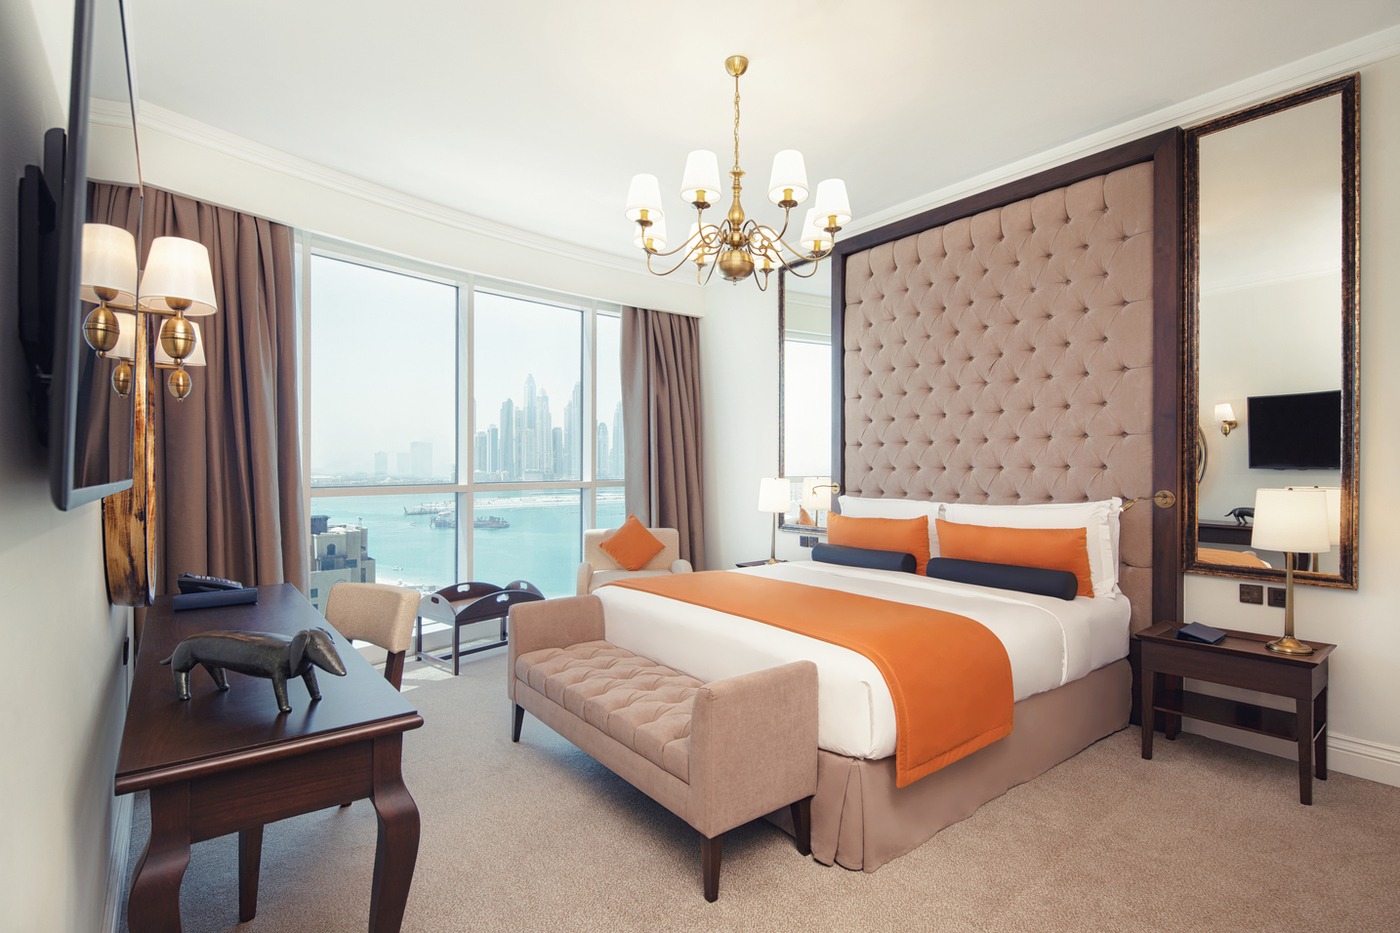 imagen 2 de El hotel Royal Hideaway Dukes The Palm de Dubái es uno de los mejores hoteles de lujo del mundo.